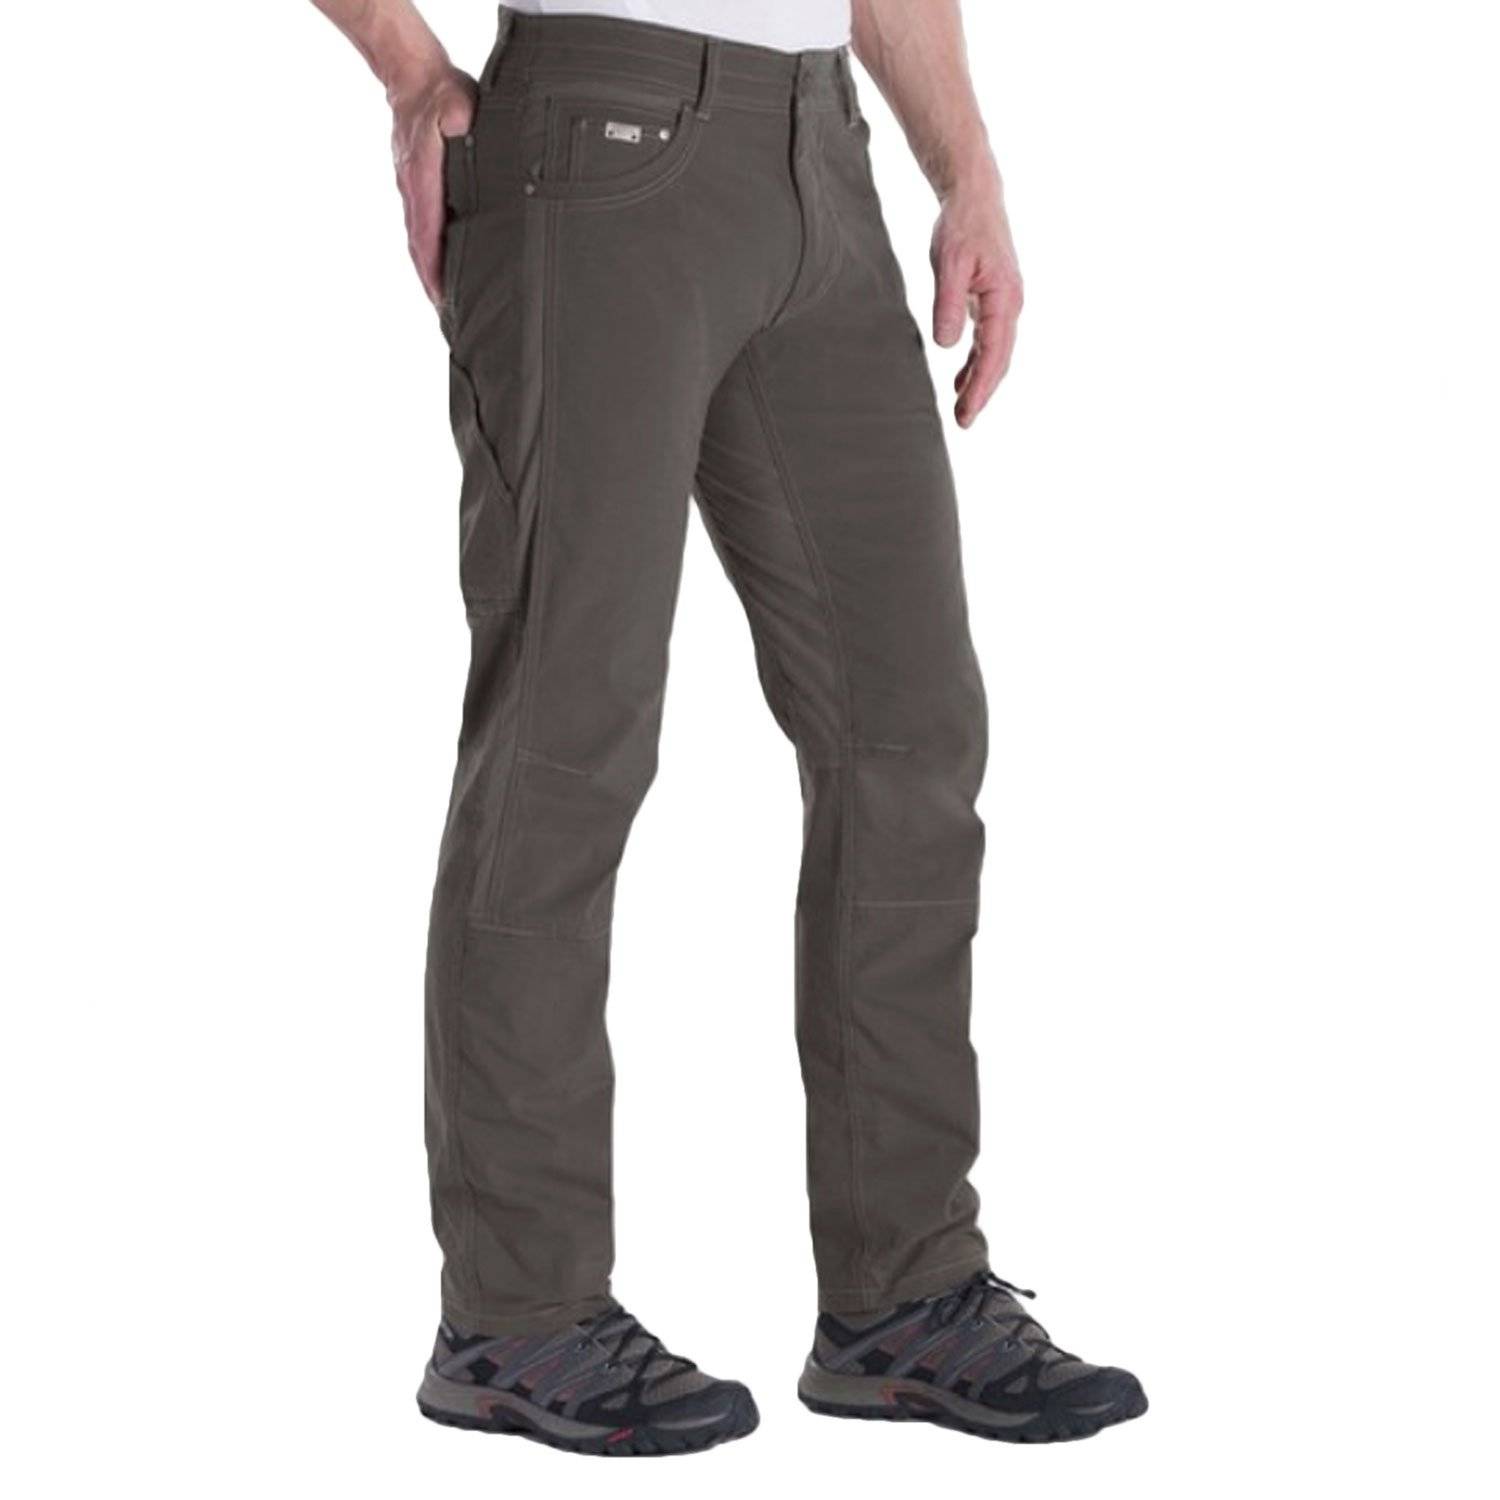 Item 824201 - KUHL Radikl Pants - Men's - Men's Hiking and Cli